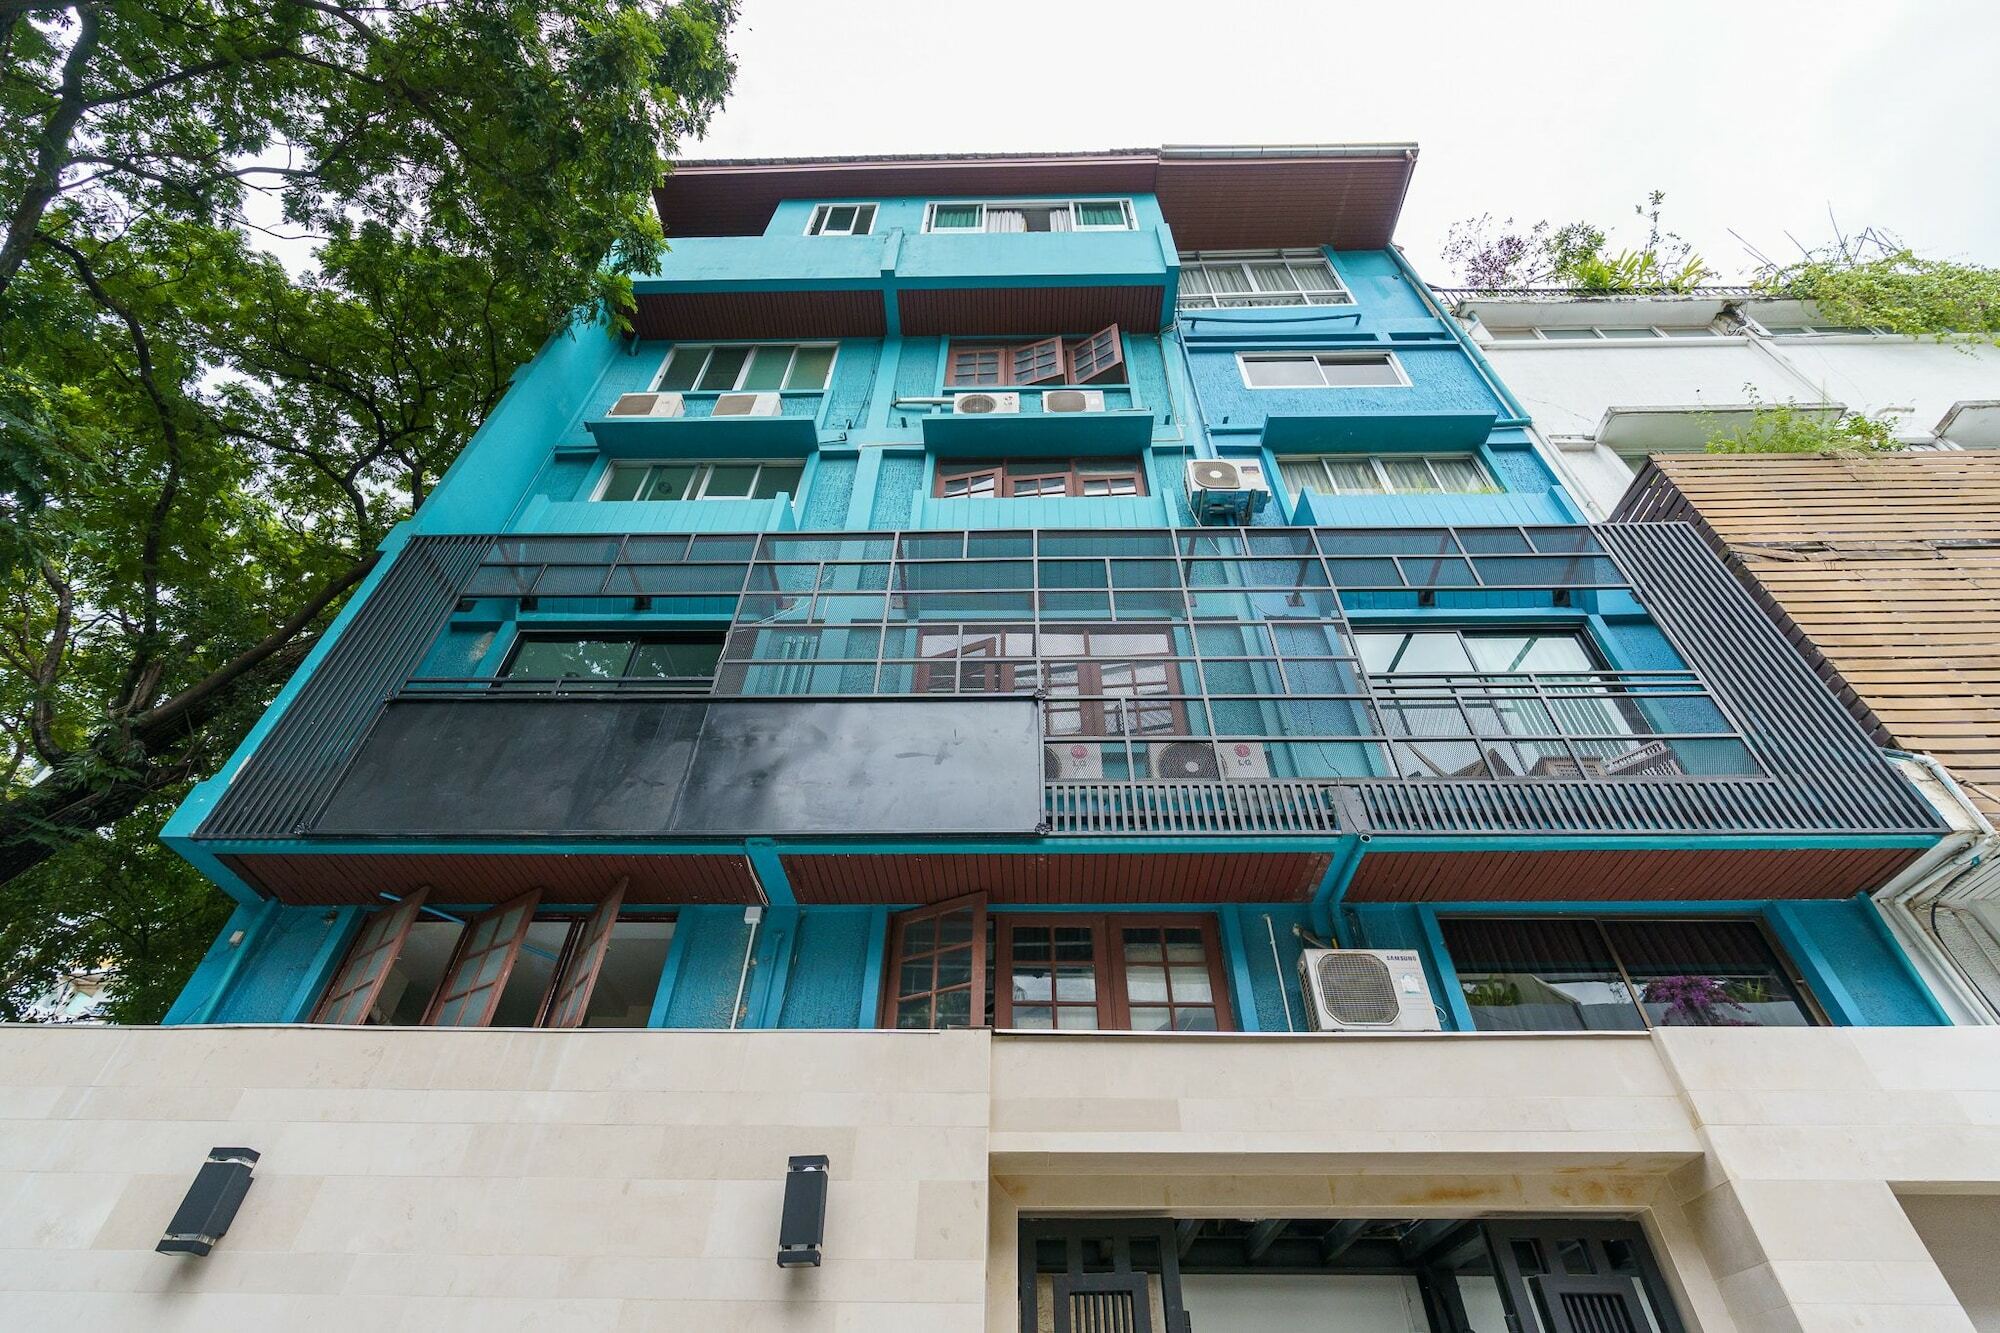 39 Living Appartement Bangkok Buitenkant foto